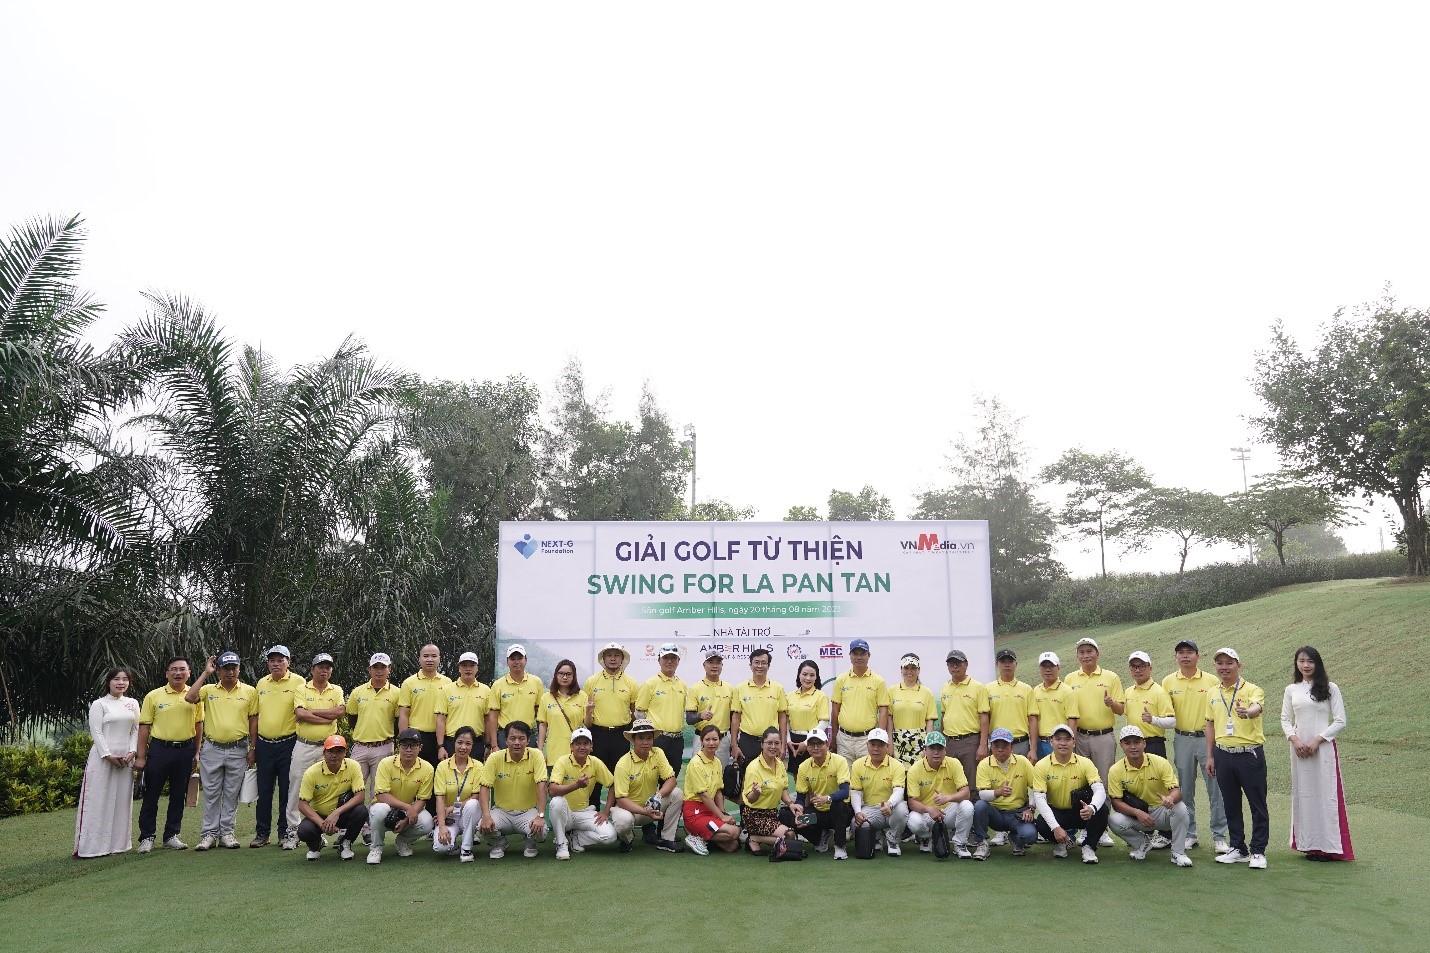 Quỹ từ thiện Next- G: Khai mạc Giải Golf gây quỹ từ thiện – Swing for La Pan Tan